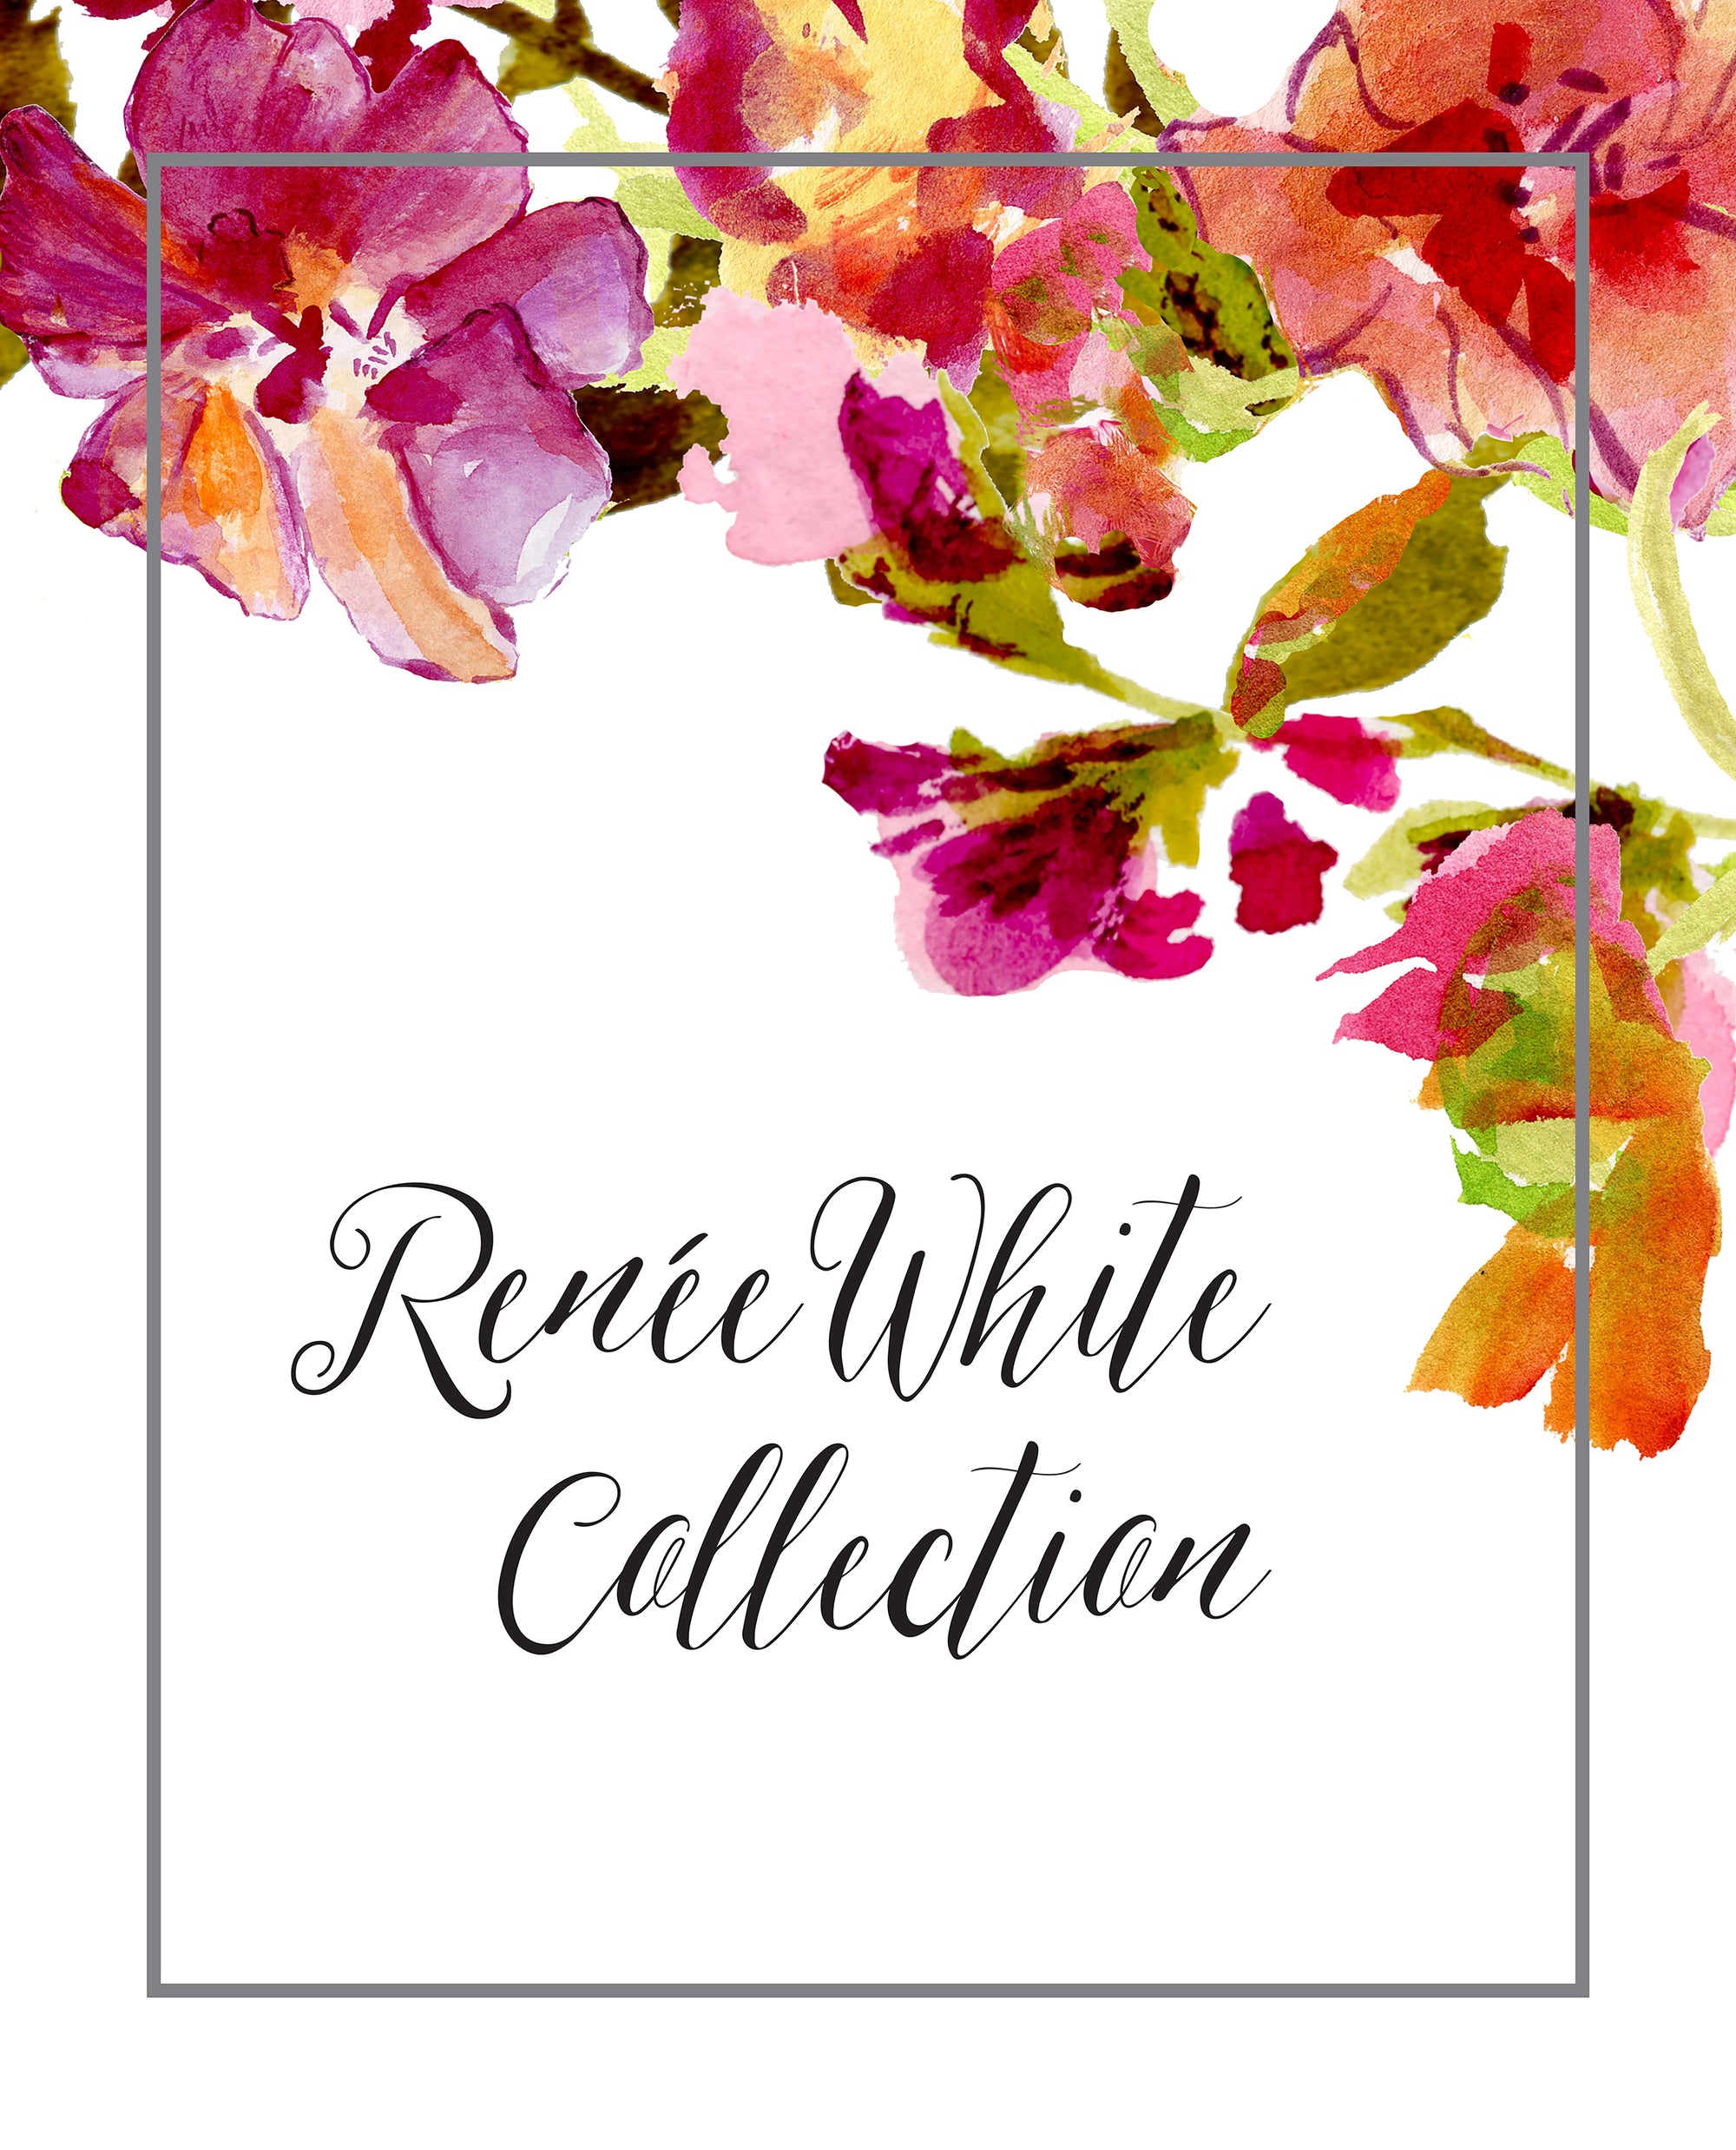 Renée White Collection!